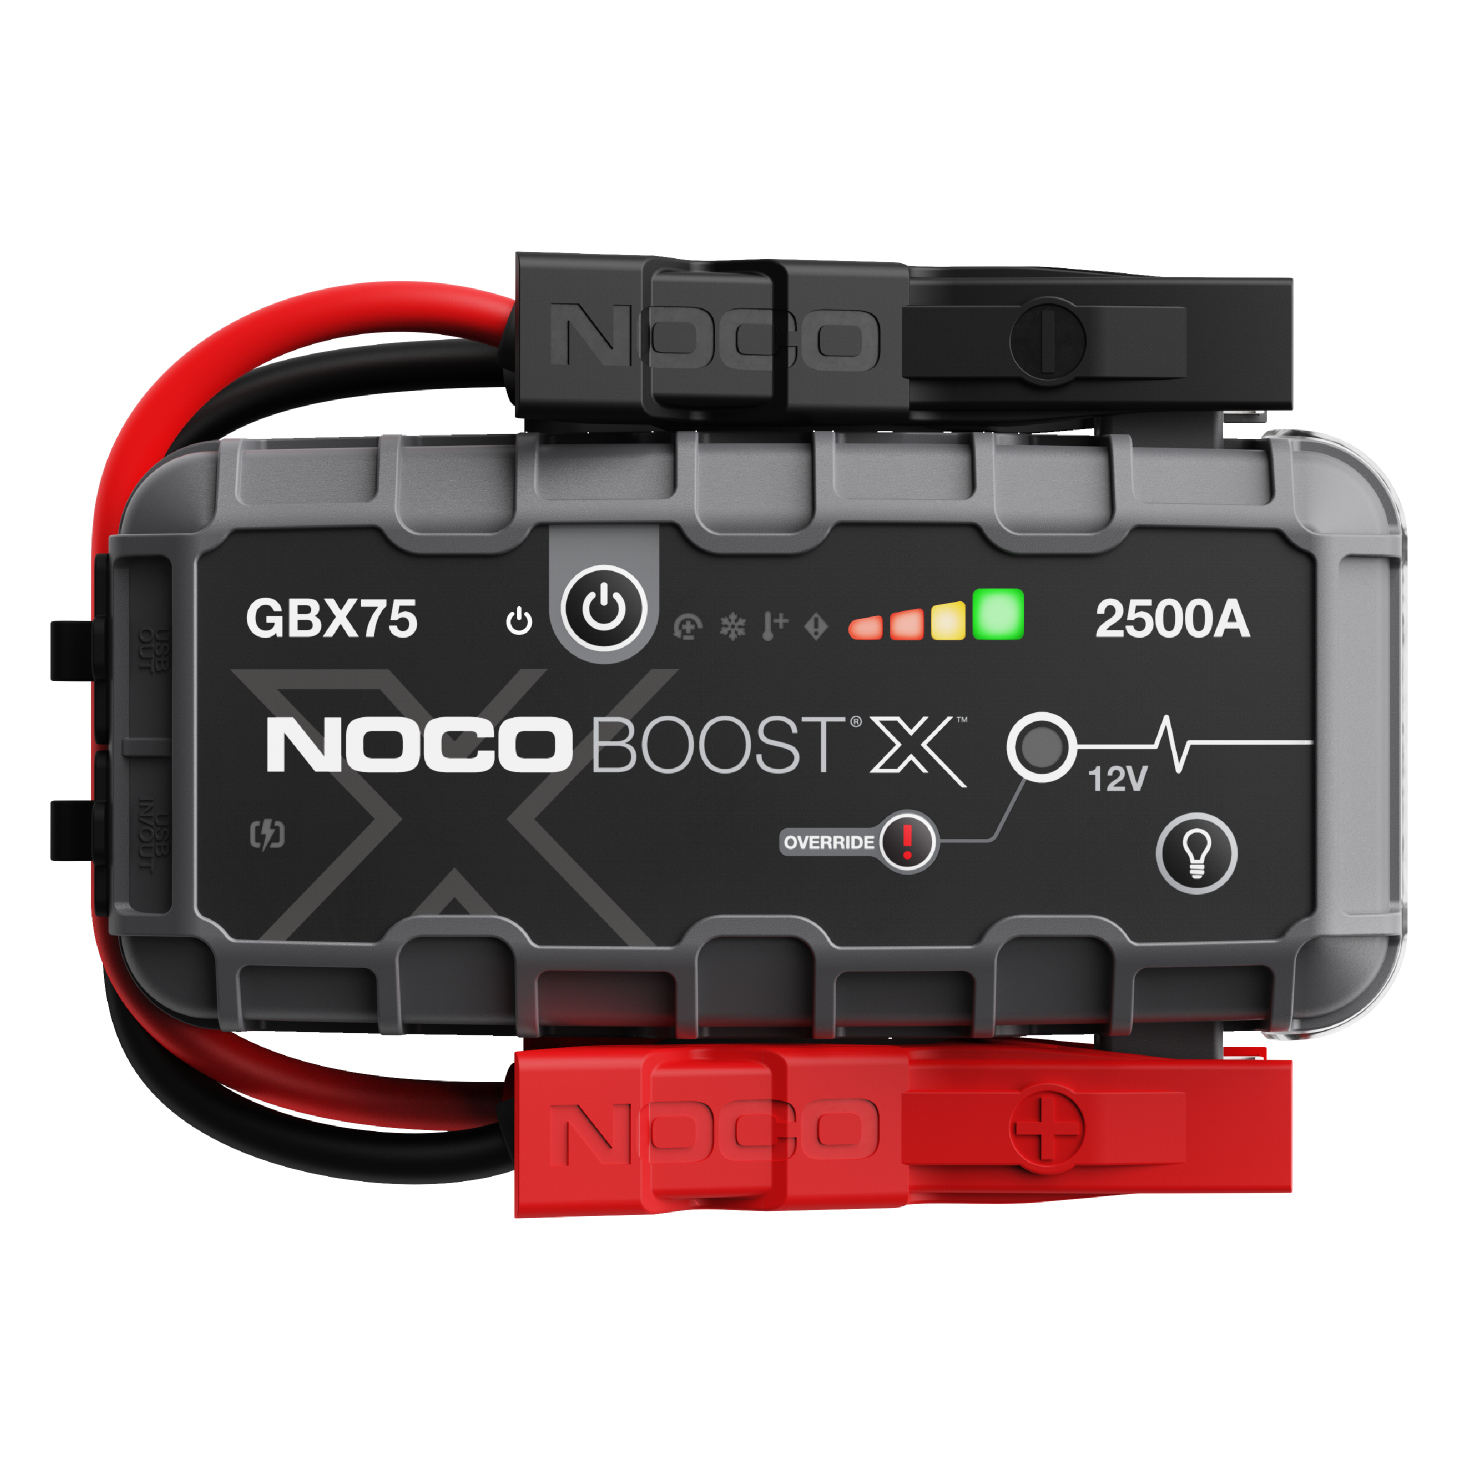 NOCO - 2500A Lithium Jump Starter - GBX75